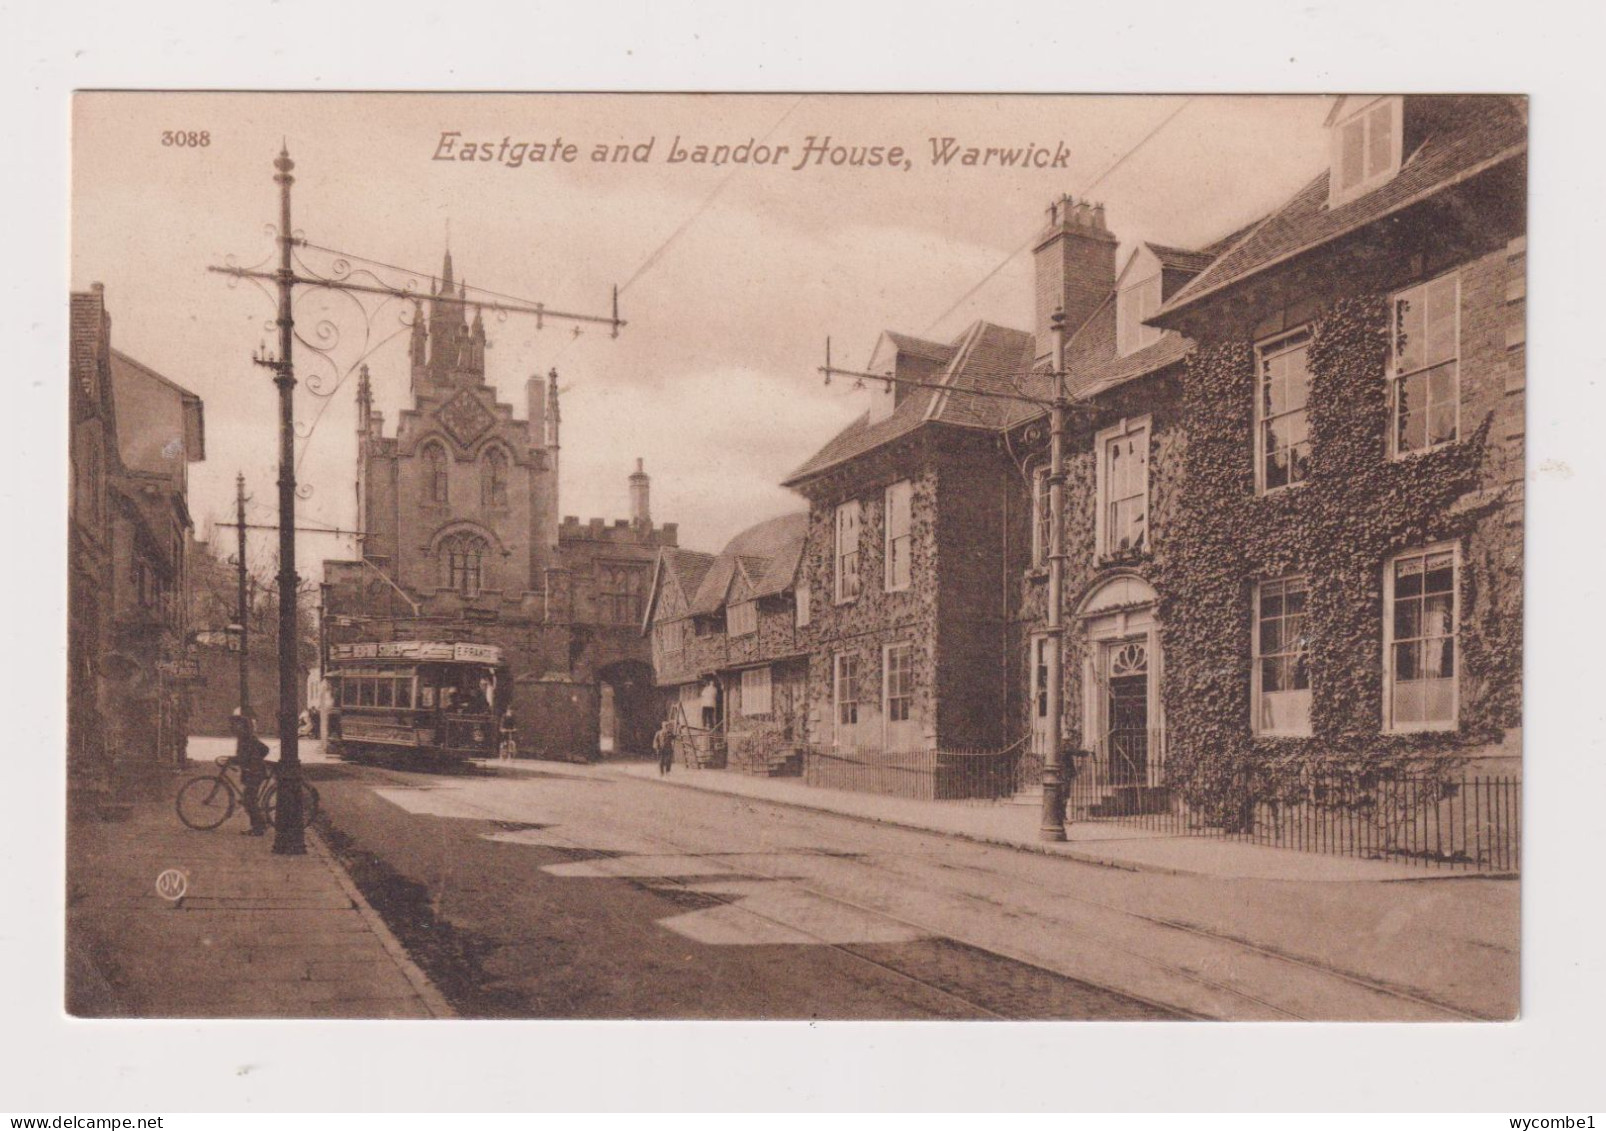 ENGLAND -  Warwick Eastgate and Landor House  Unused Vintage Postcard